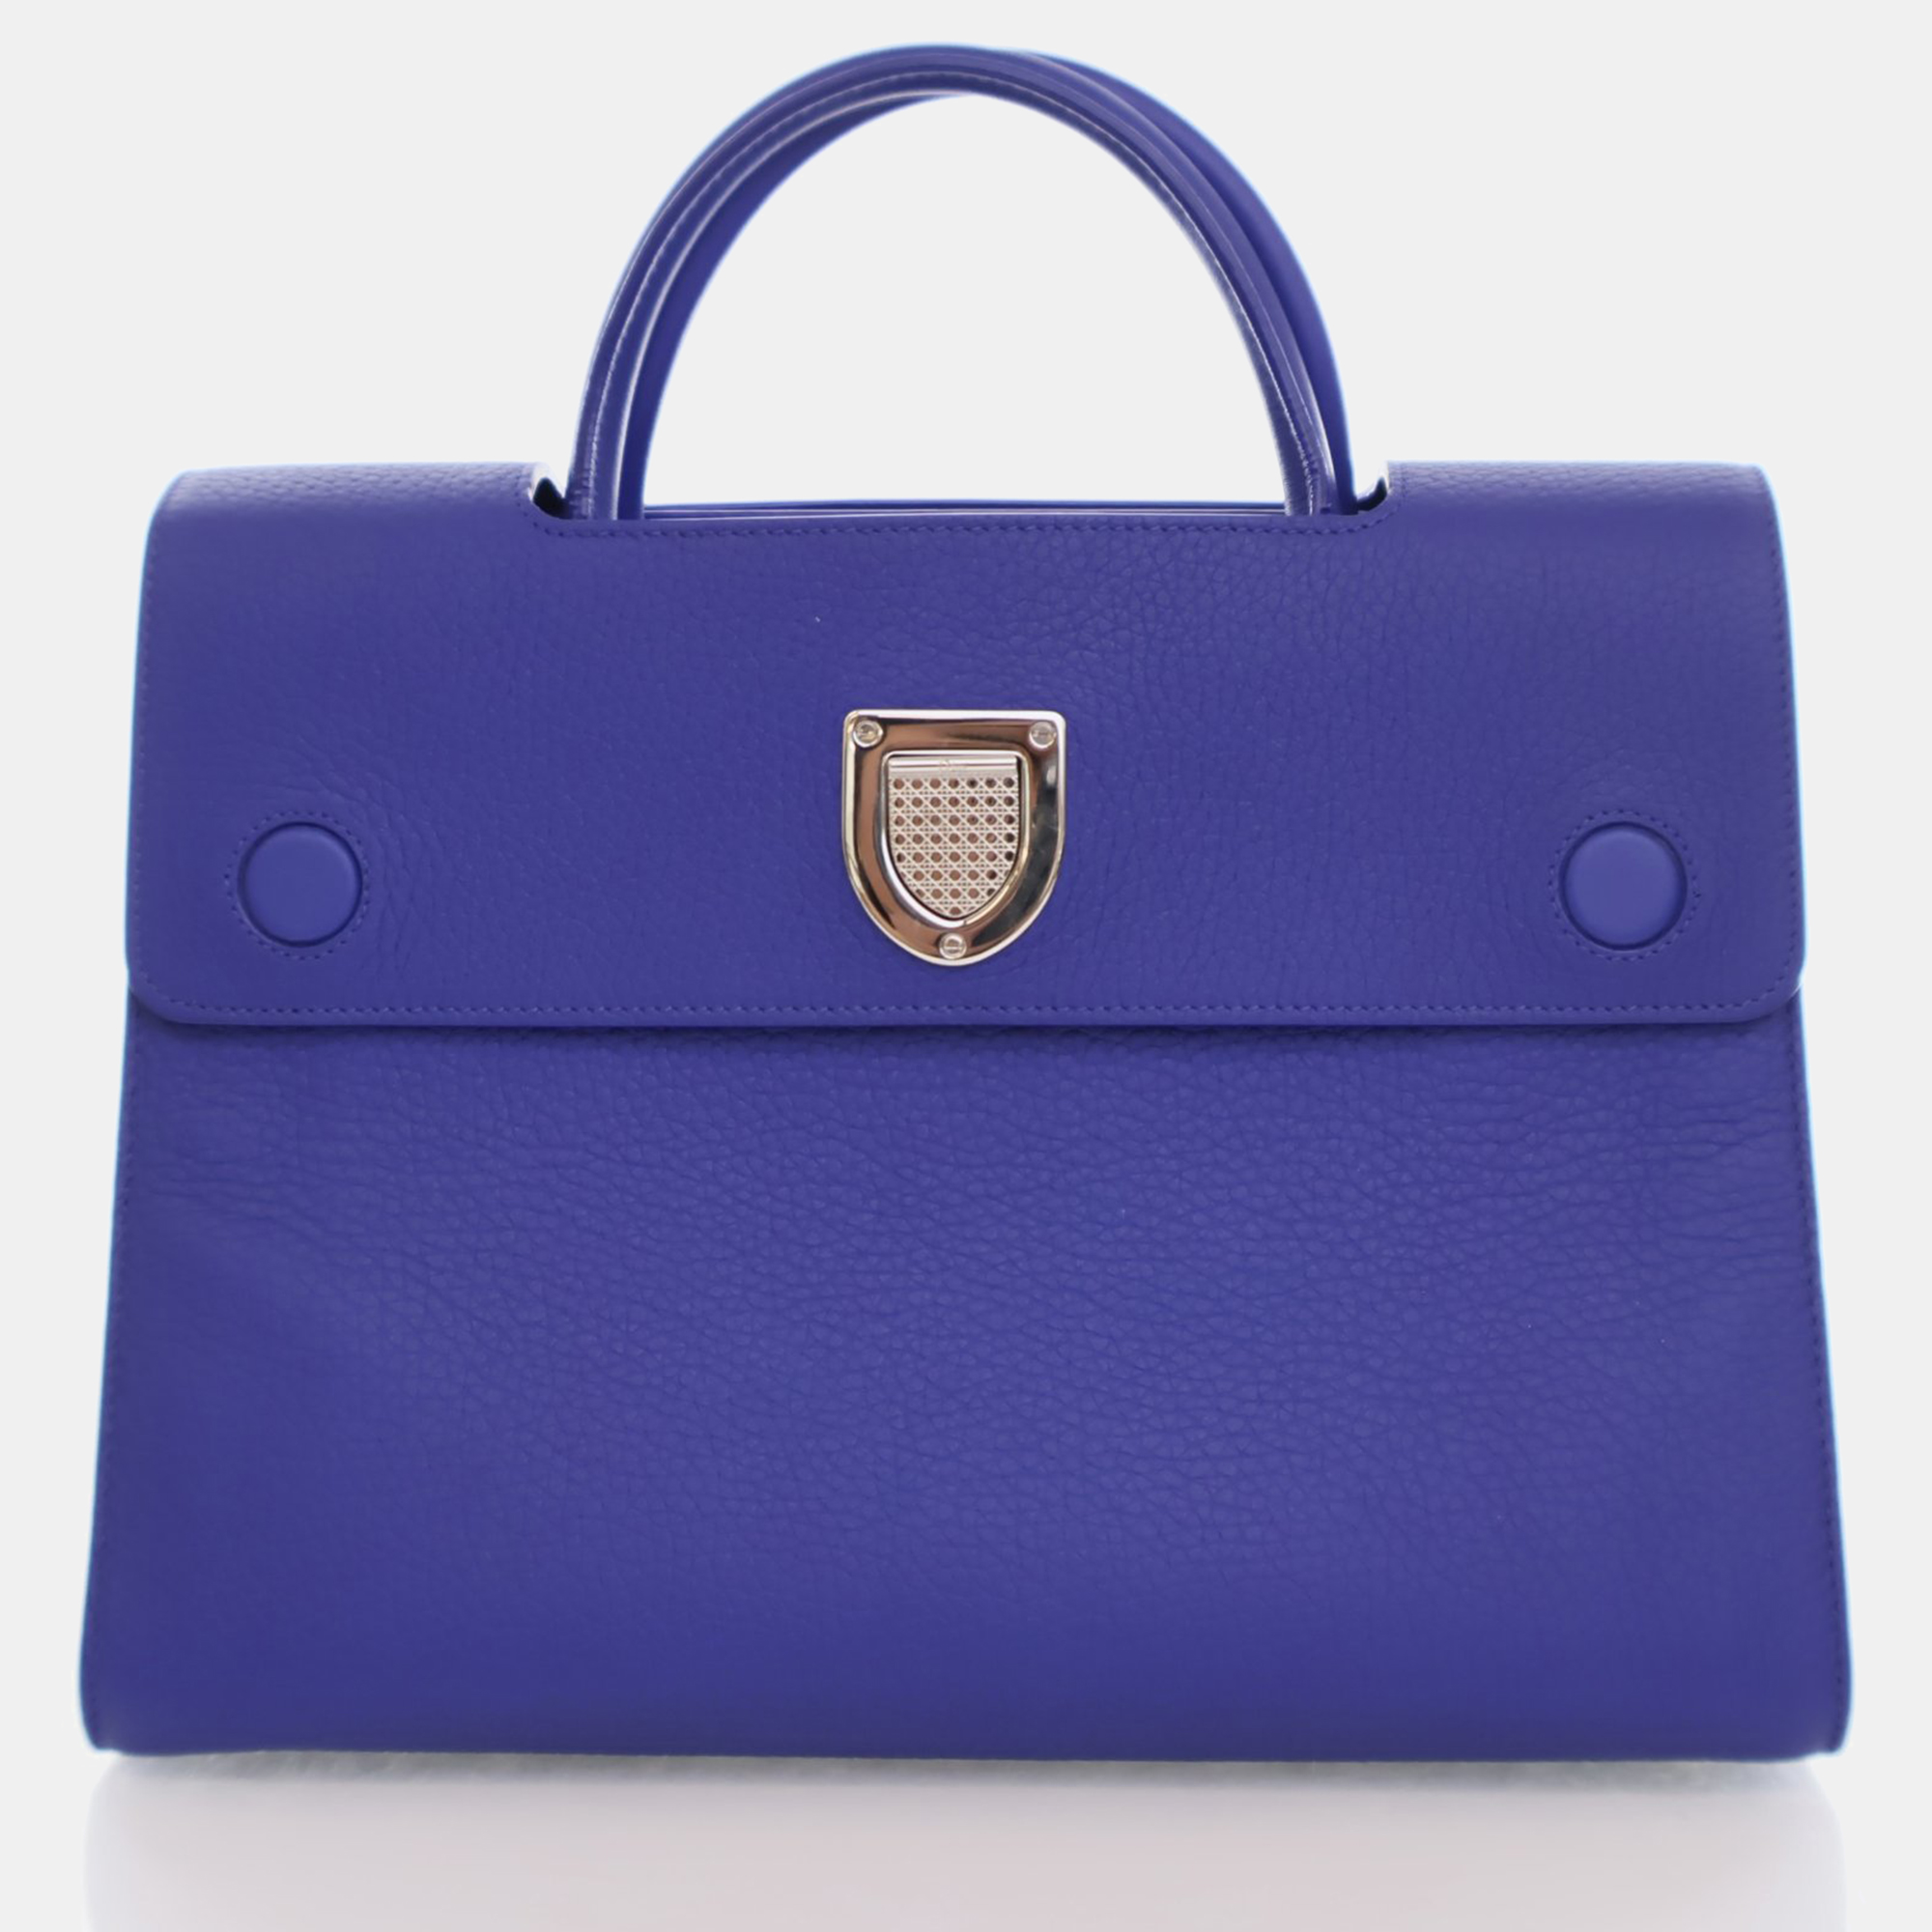 Dior blue leather medium diorever top handle bag